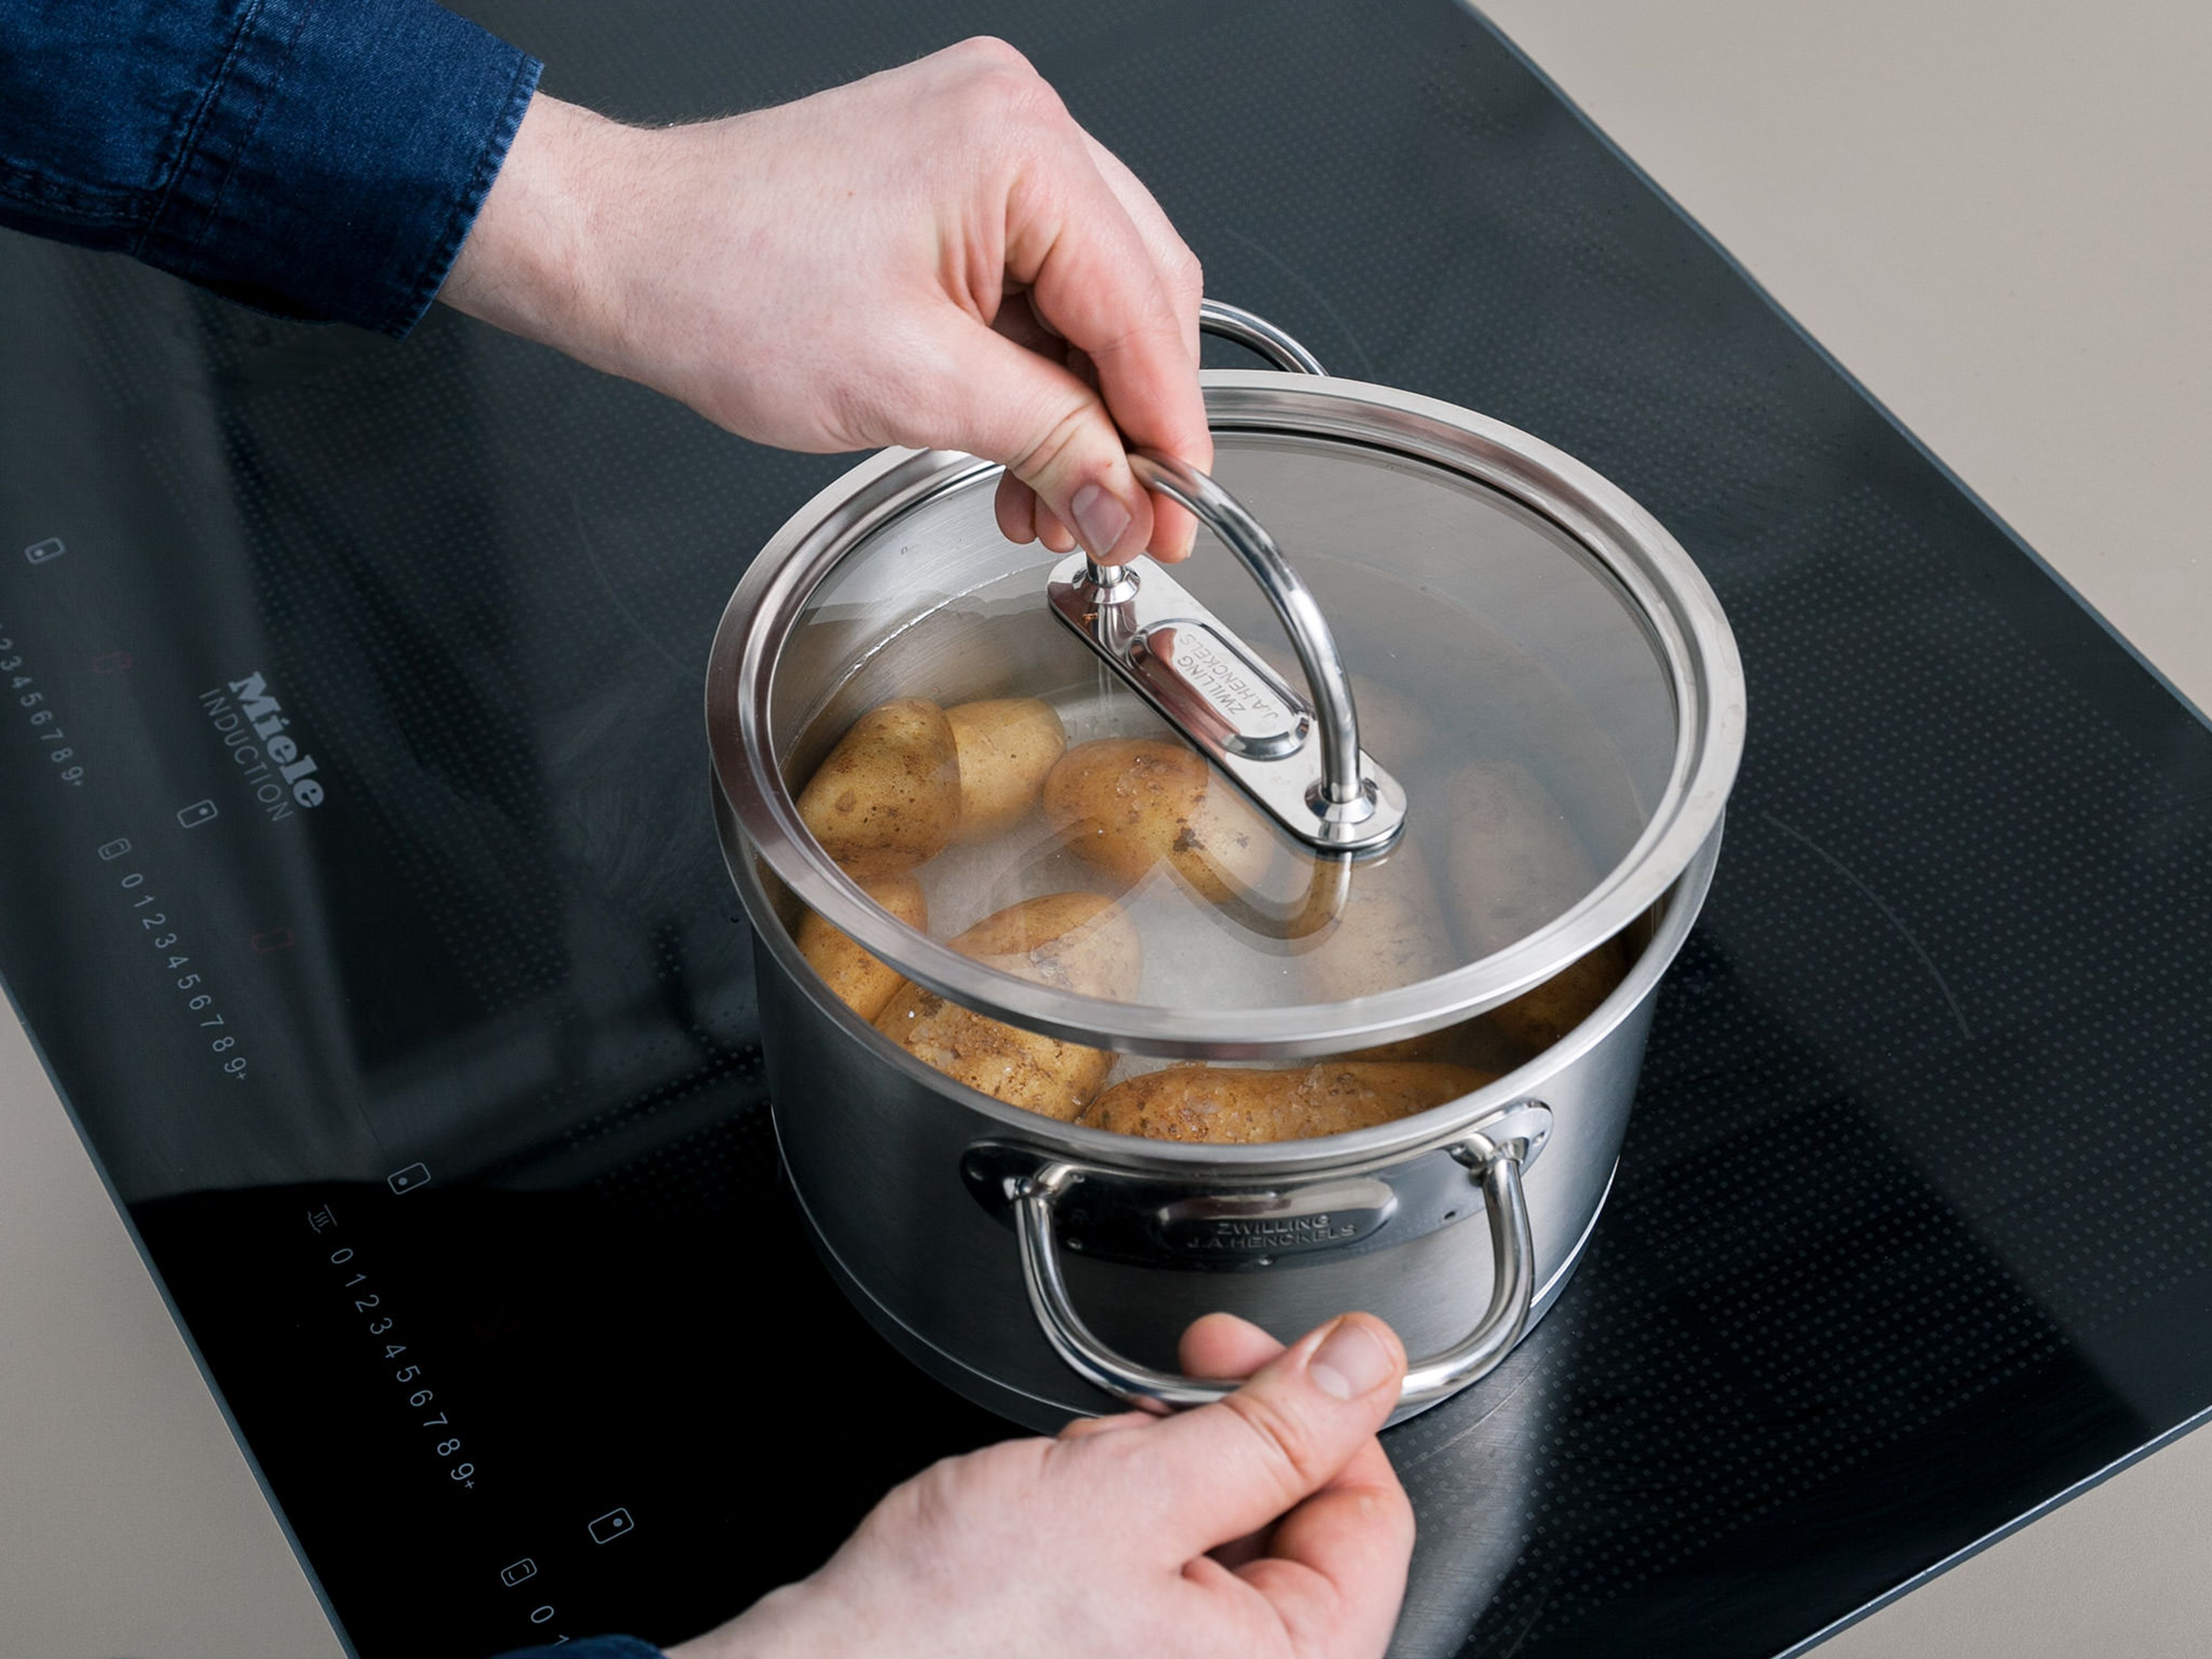 Frühkartoffeln waschen und zusammen mit Meersalz in einen Topf geben. Mit Wasser auffüllen, bis die Kartoffeln vollständig bedeckt sind. Abgedeckt für ca. 25 Min. kochen lassen.